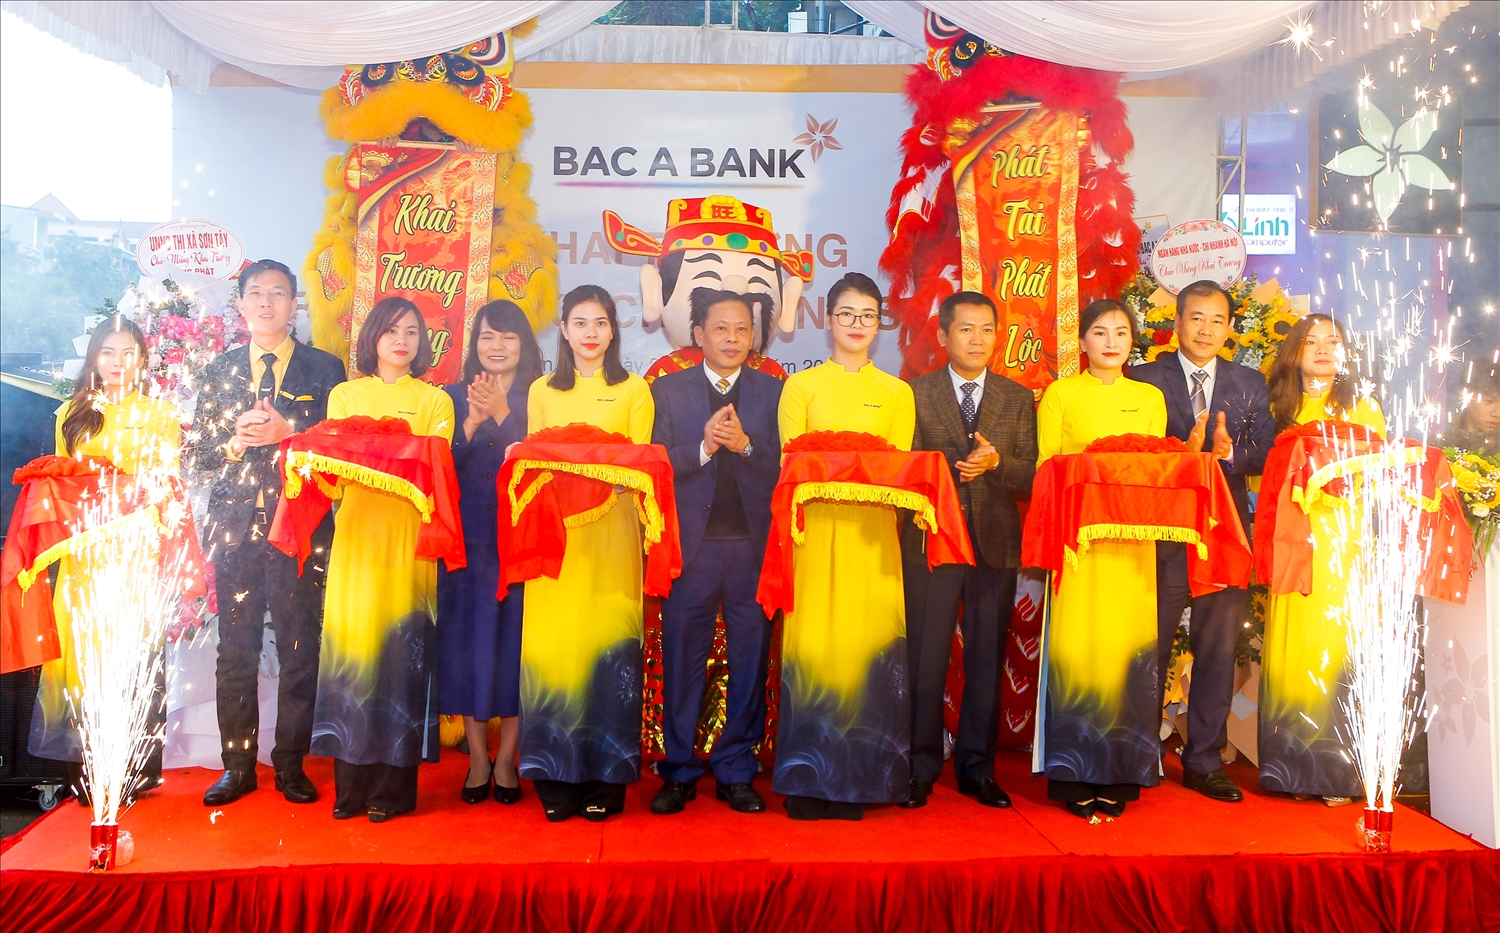 BAC A BANK mở rộng mạng lưới tại cửa ngõ phía Tây thủ đô Hà Nội